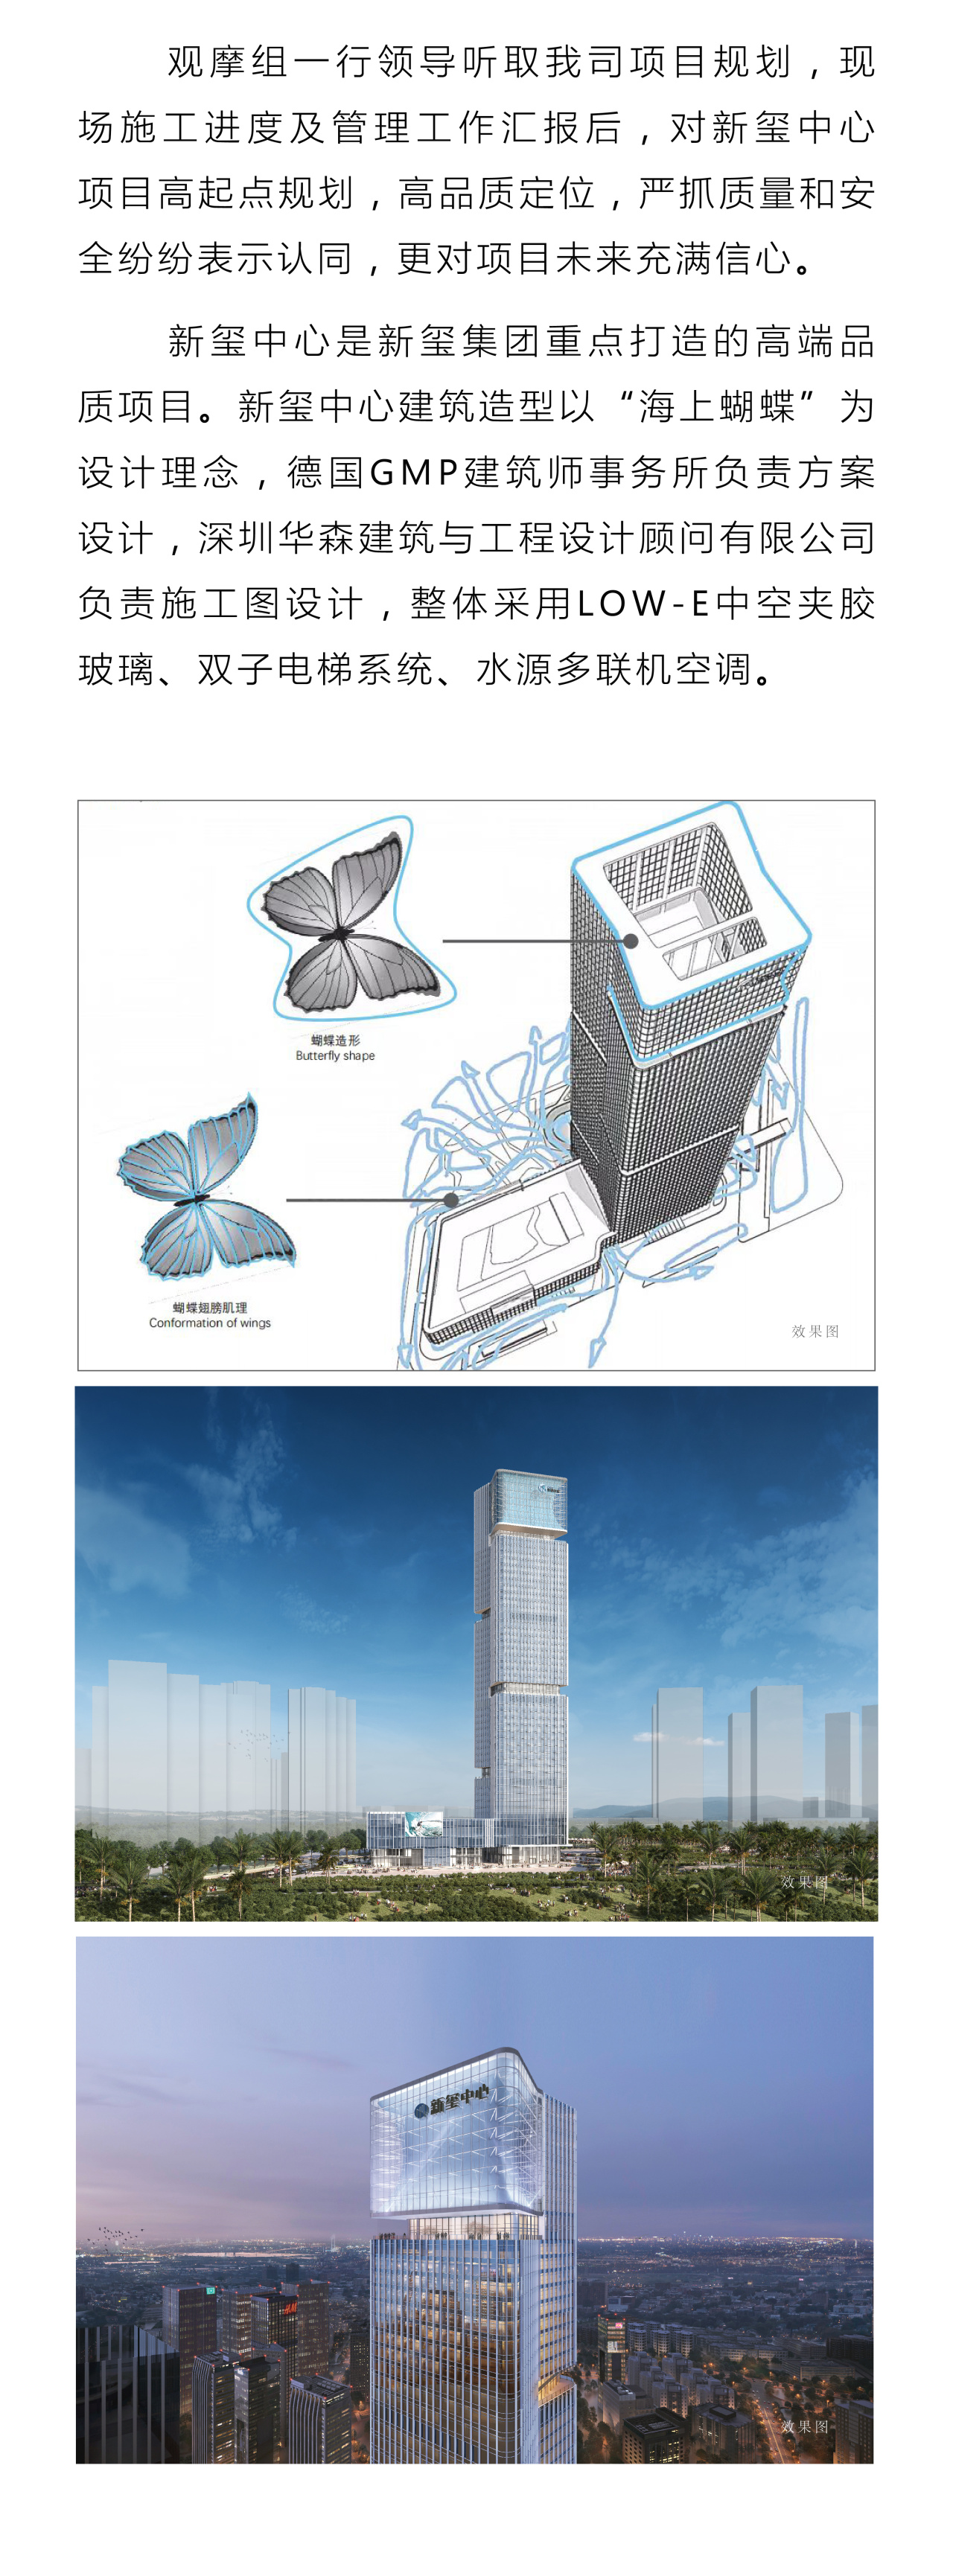 新玺热讯 | 新玺中心项目成为全市重点项目建设“亮晒比学”观摩点(图3)